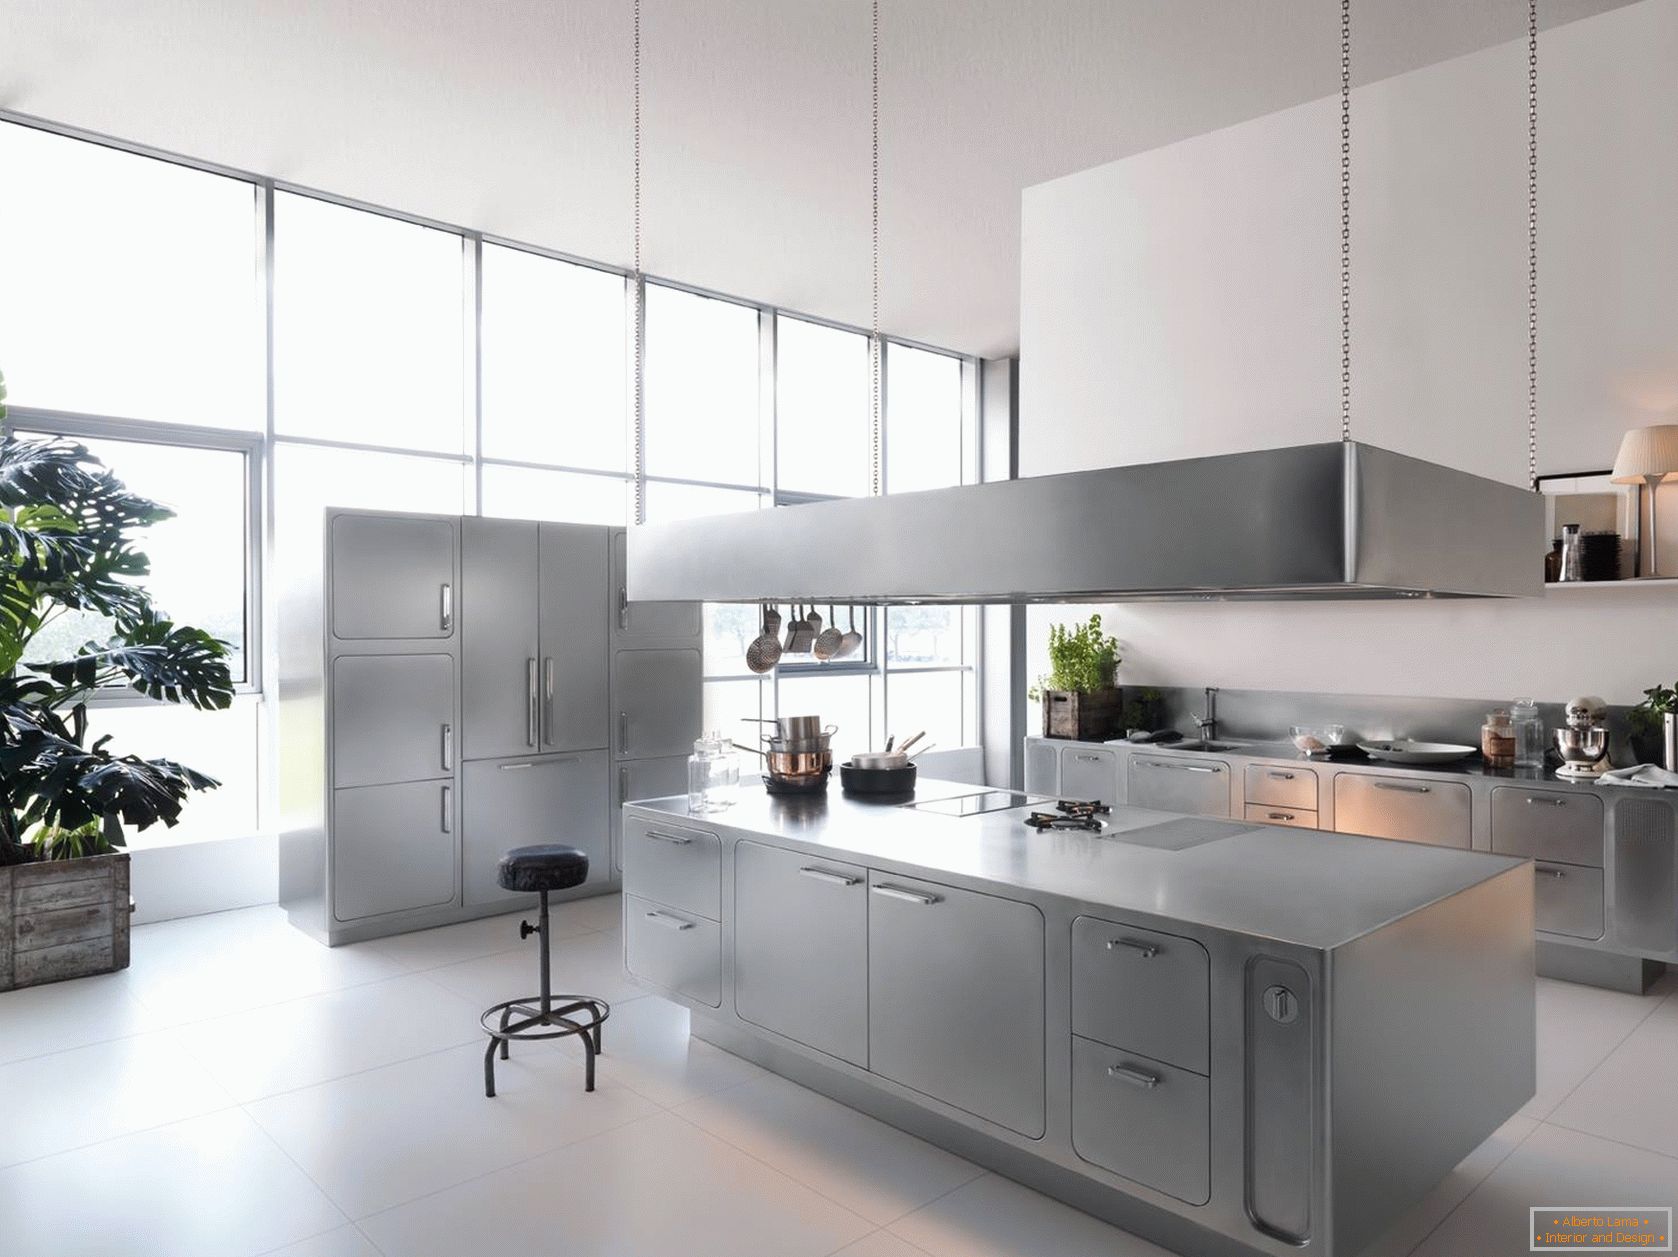 Design achromatic kitchens